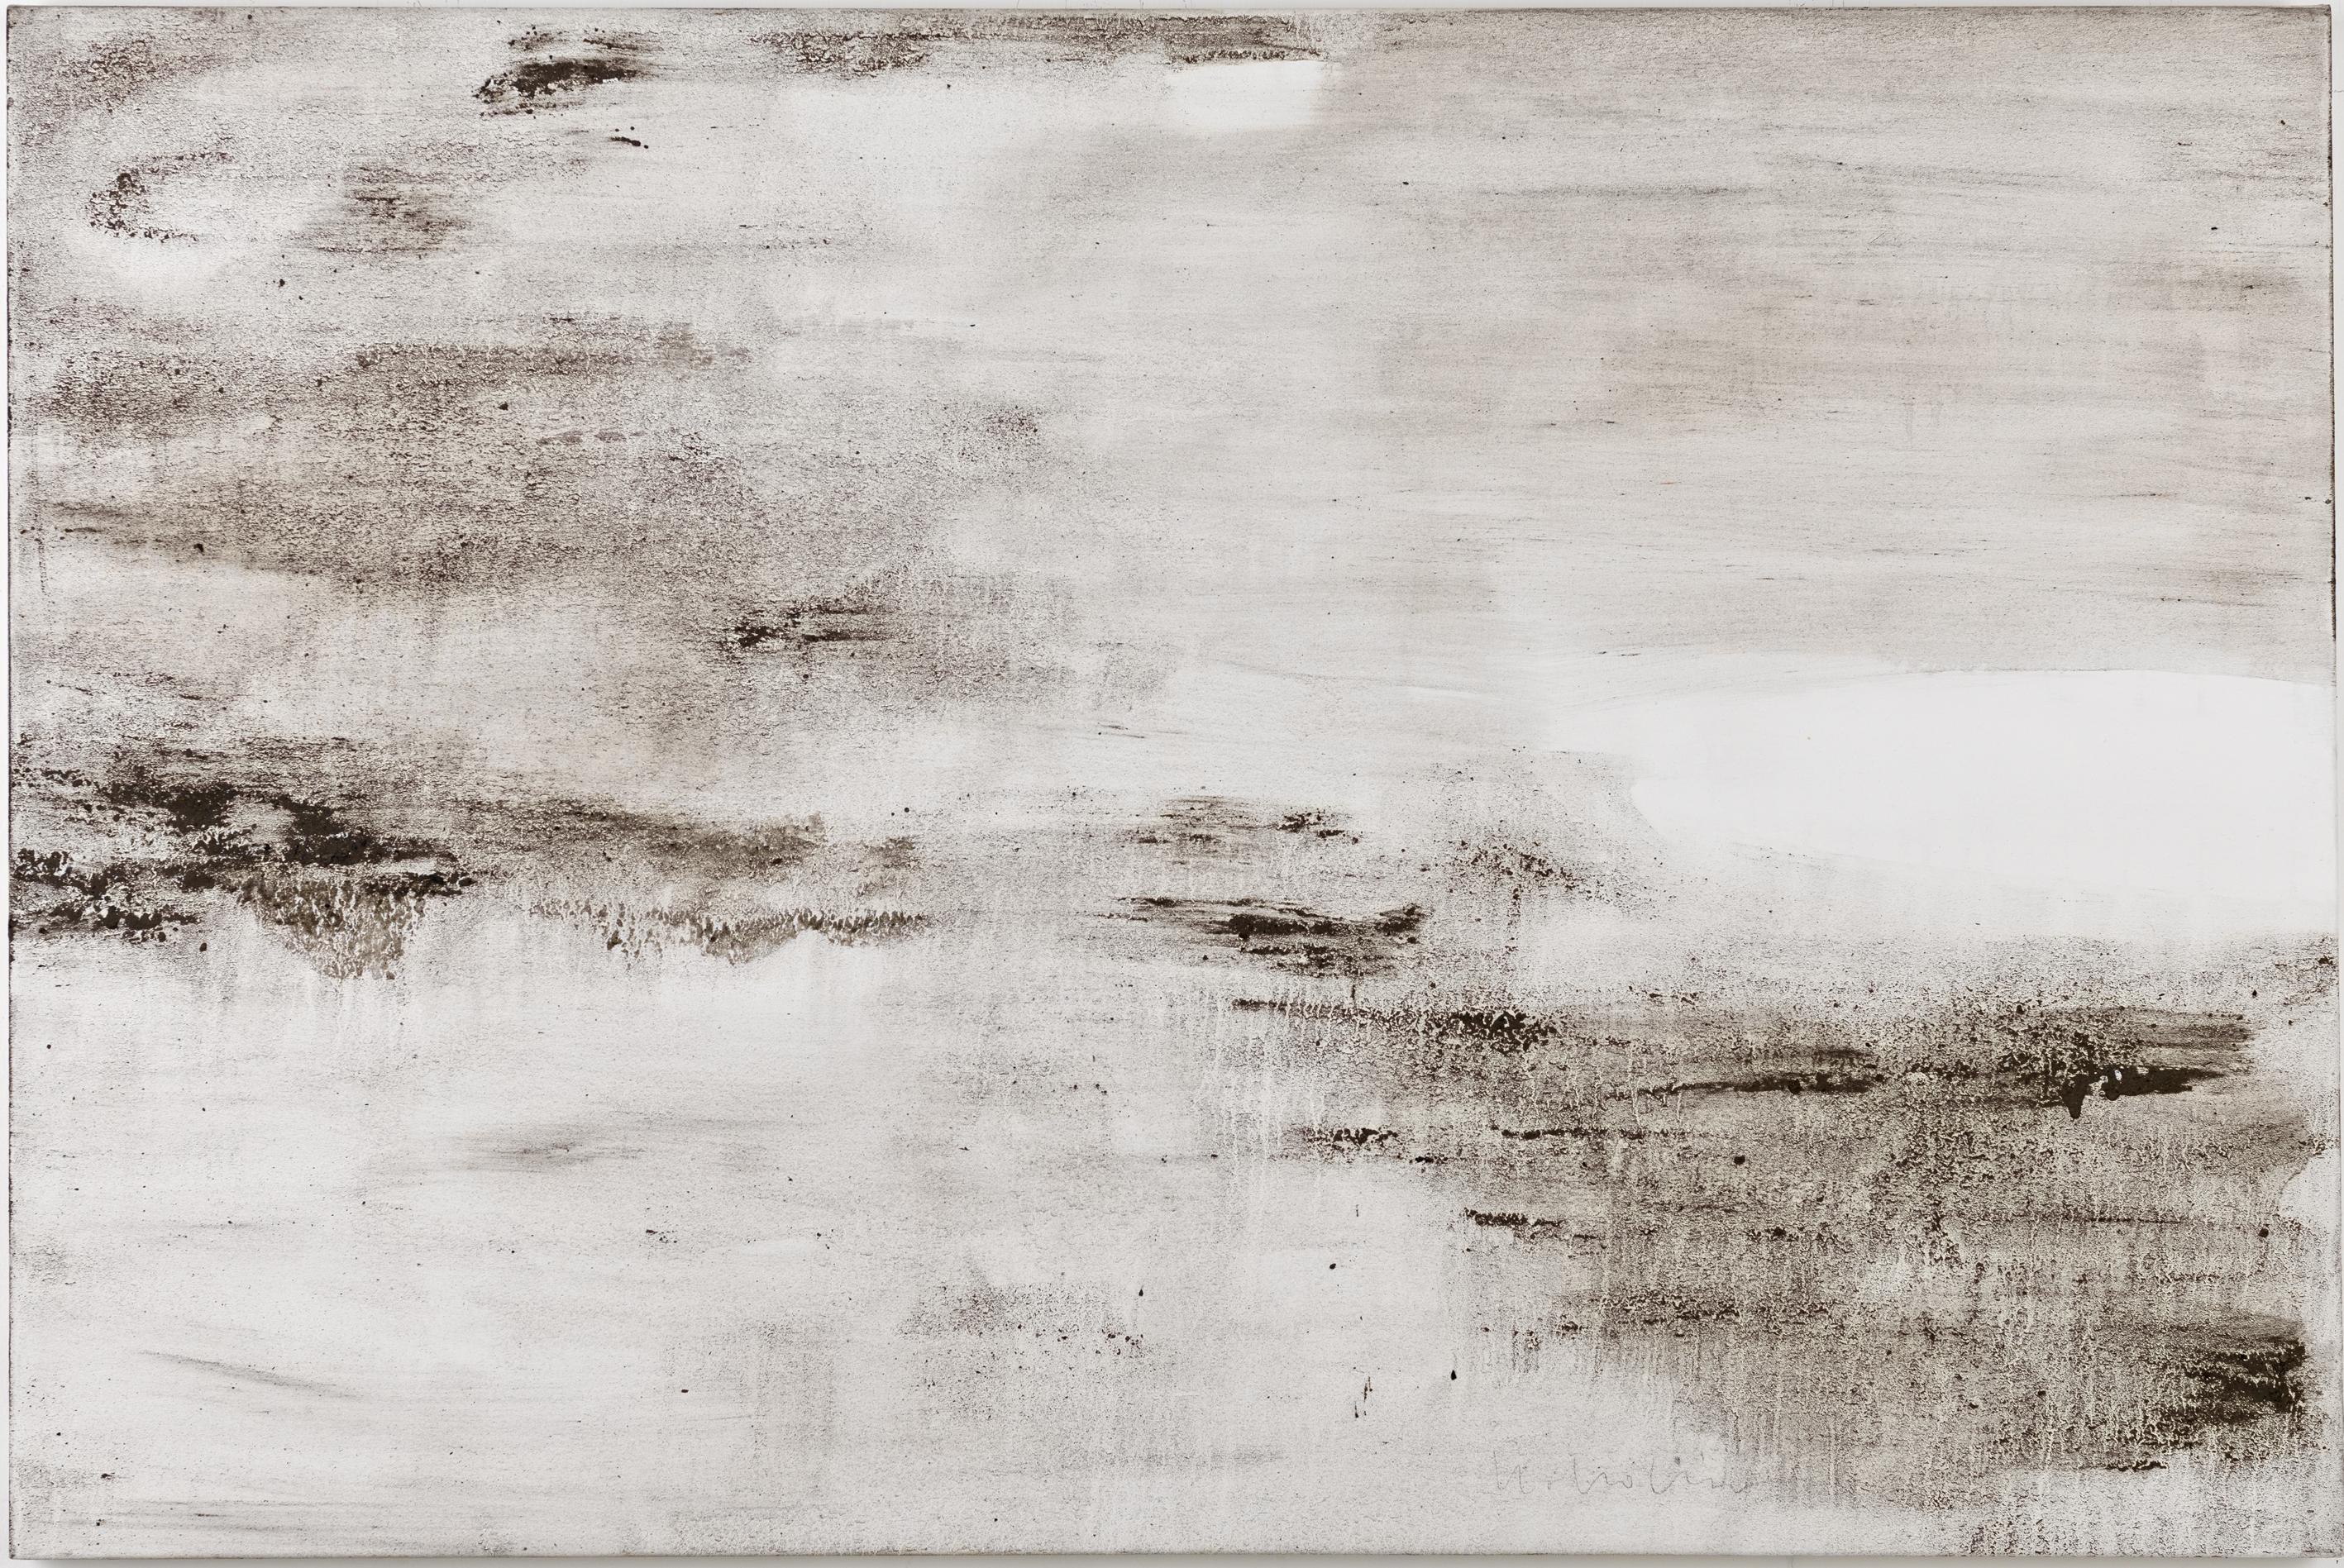 Ashes to Ashes 21  // Asche in Eitempera auf Leinwand // 100 x 150 cm // 2014